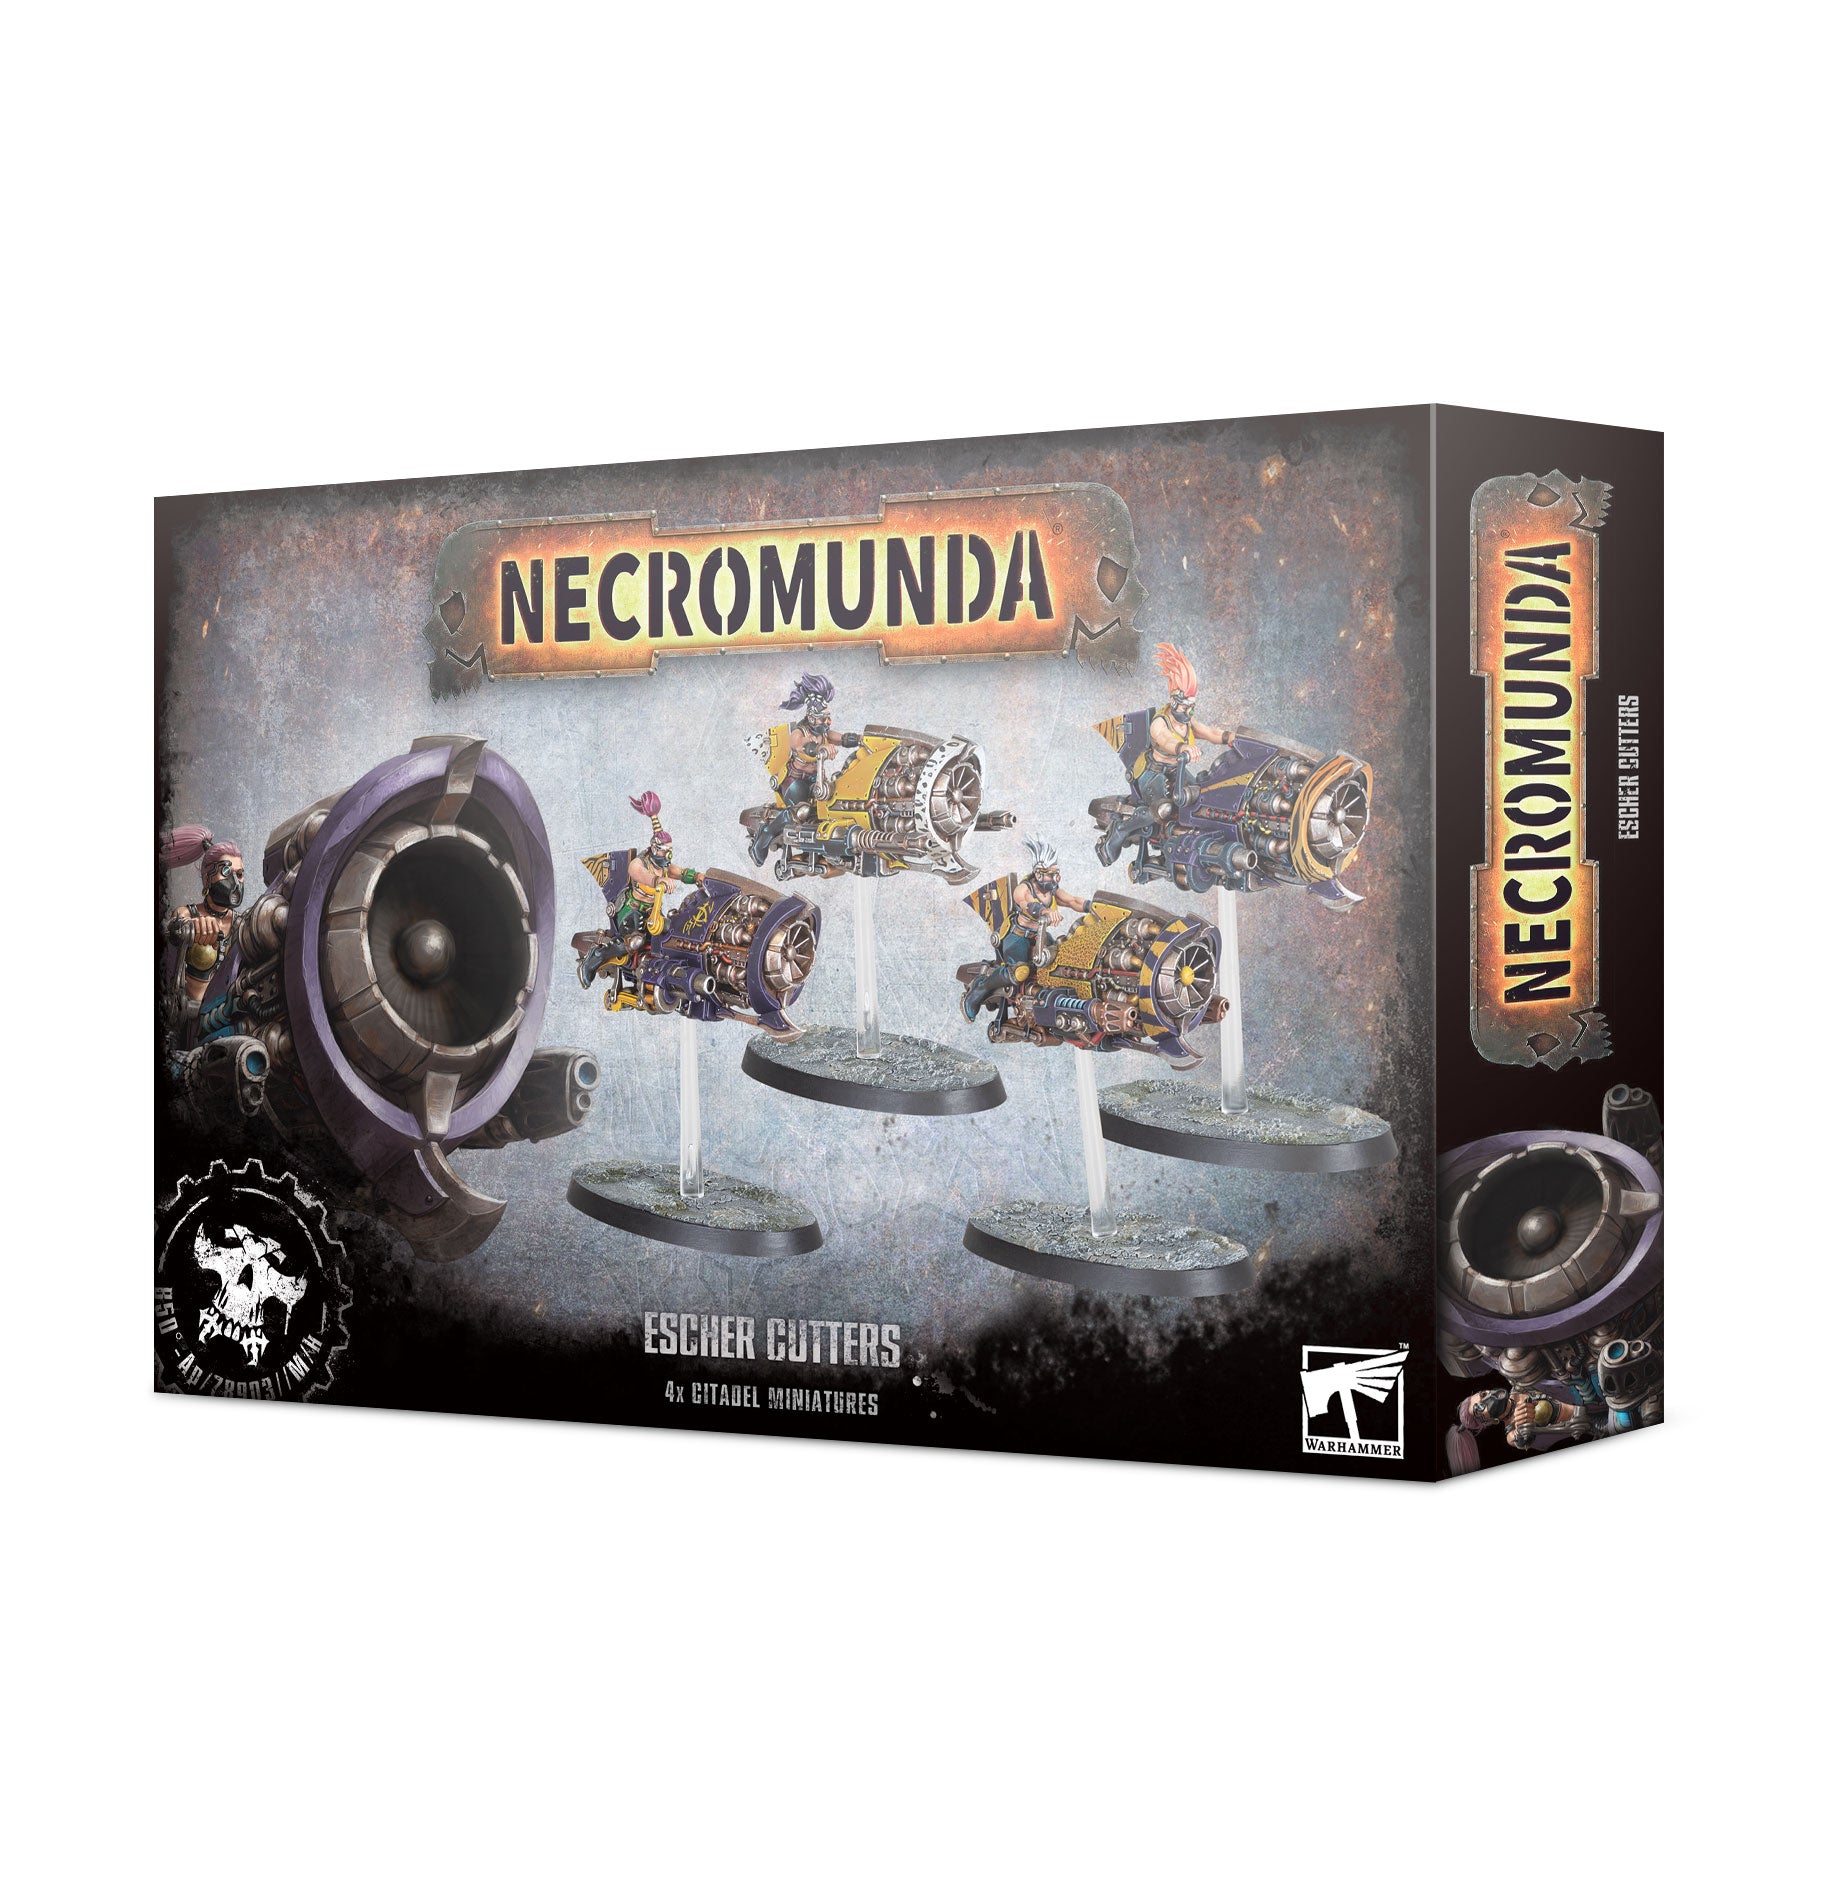 NECROMUNDA: ESCHER CUTTERS Necromunda Games Workshop    | Red Claw Gaming